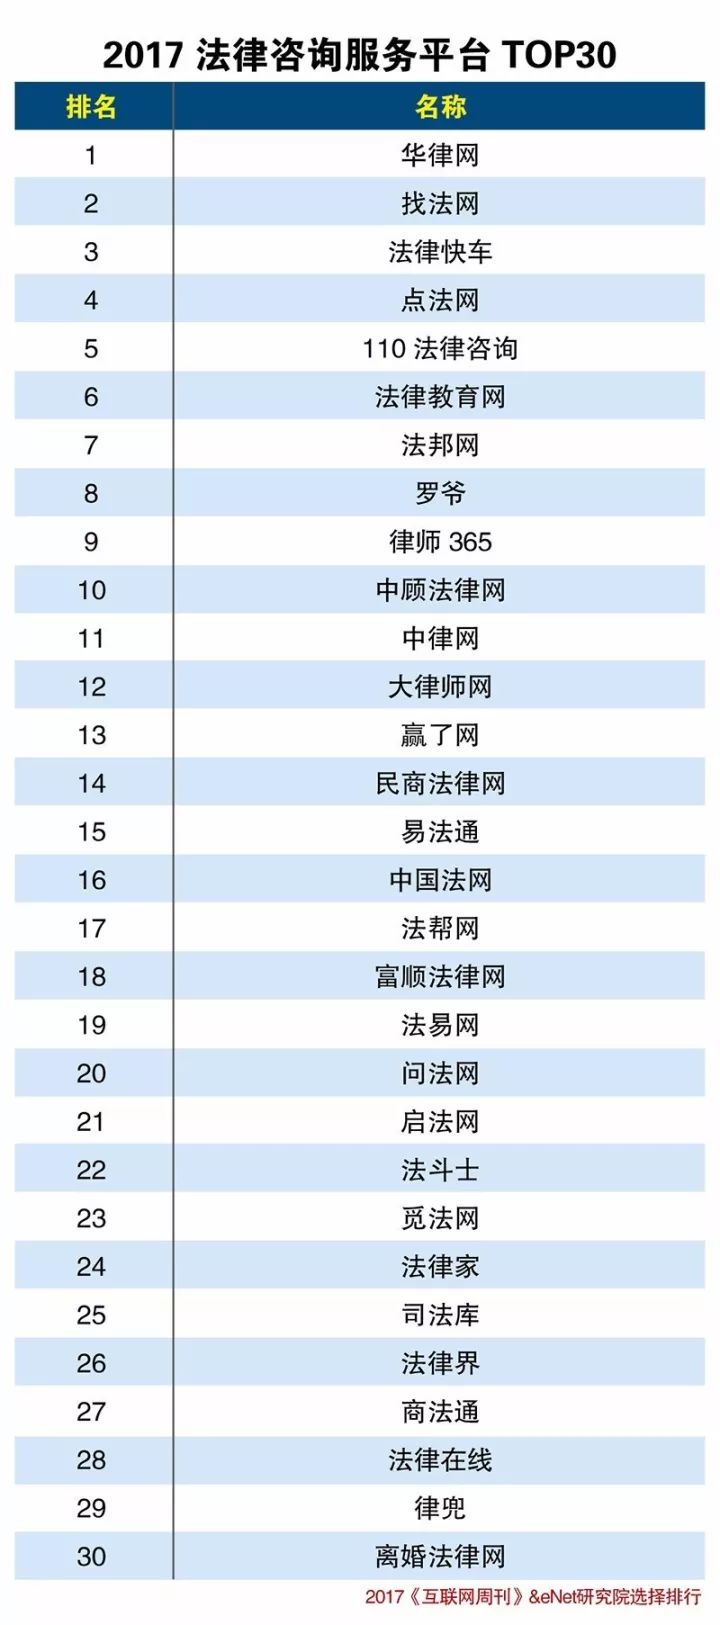 2017年法律咨询服务平台排行榜TOP30:华律网